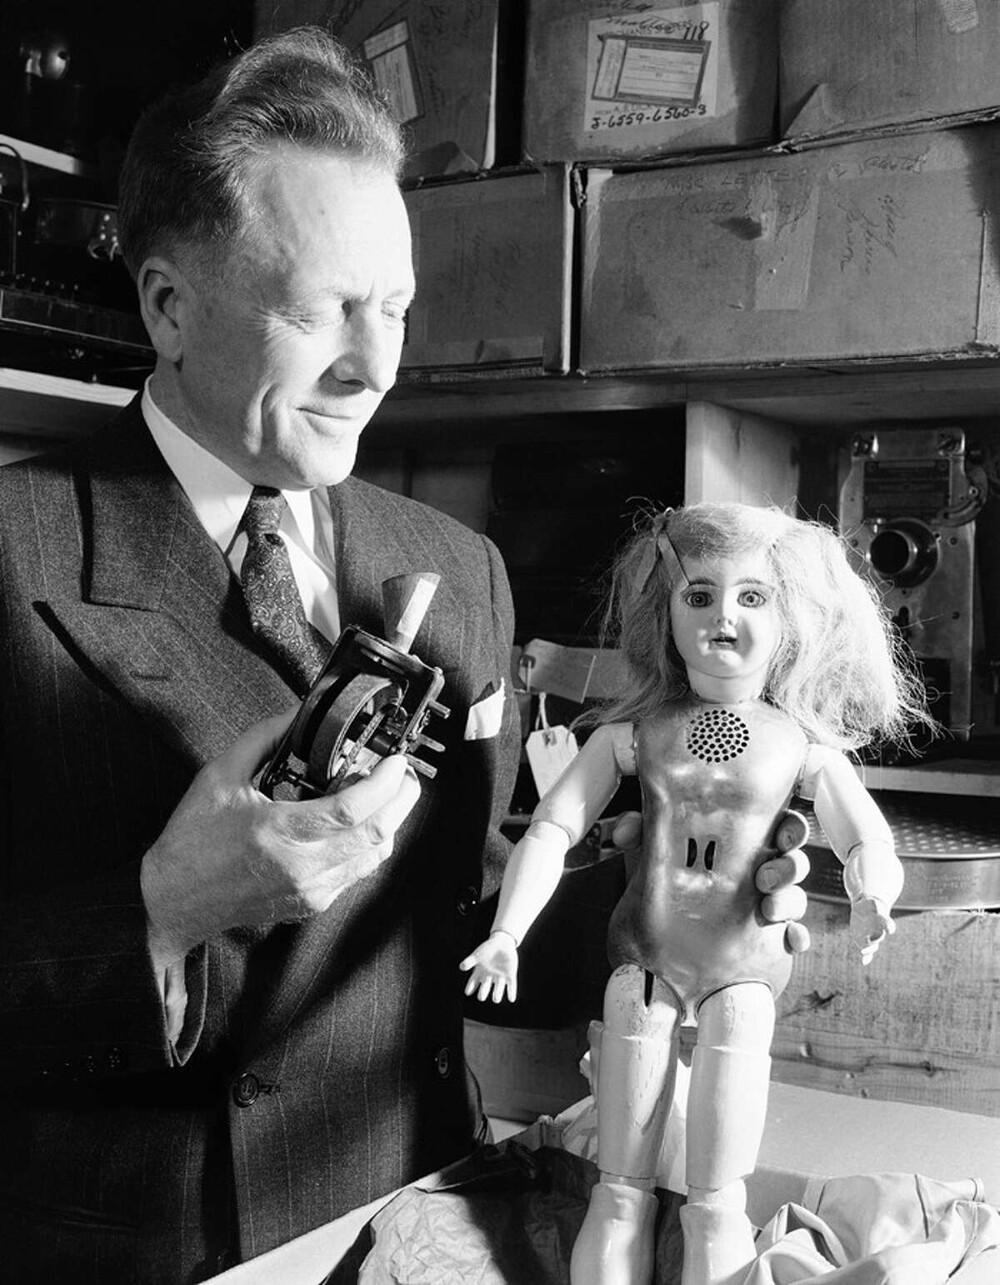 Живая кукла: странное творение Томаса Эдисона